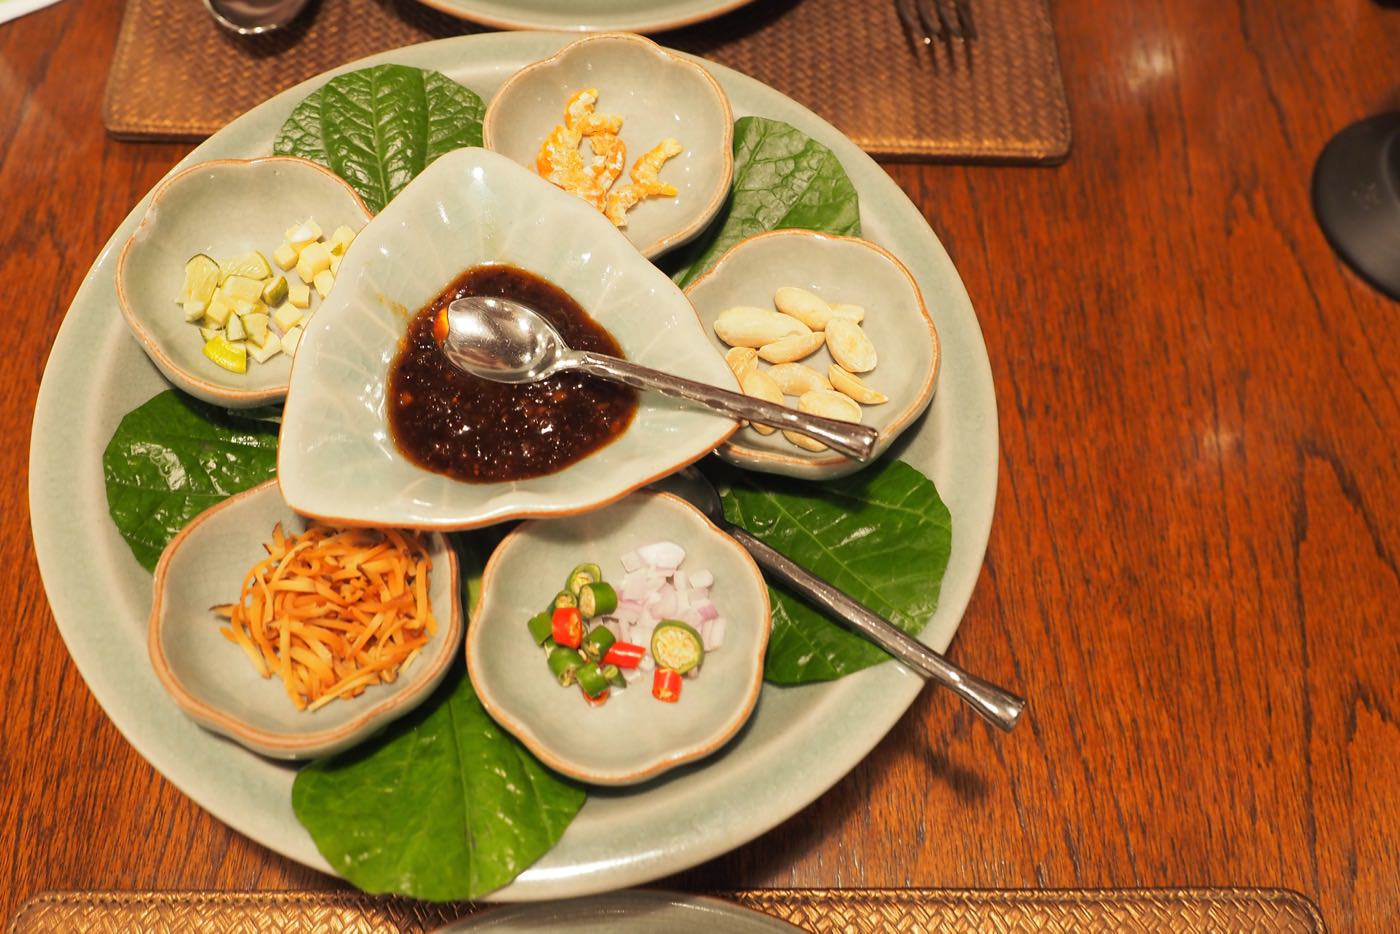 曼谷美食 Baan Khanitha Thai Cuisine 意猶未盡的泰式經典菜餚 - 一口冒險 Bitesized Adventure